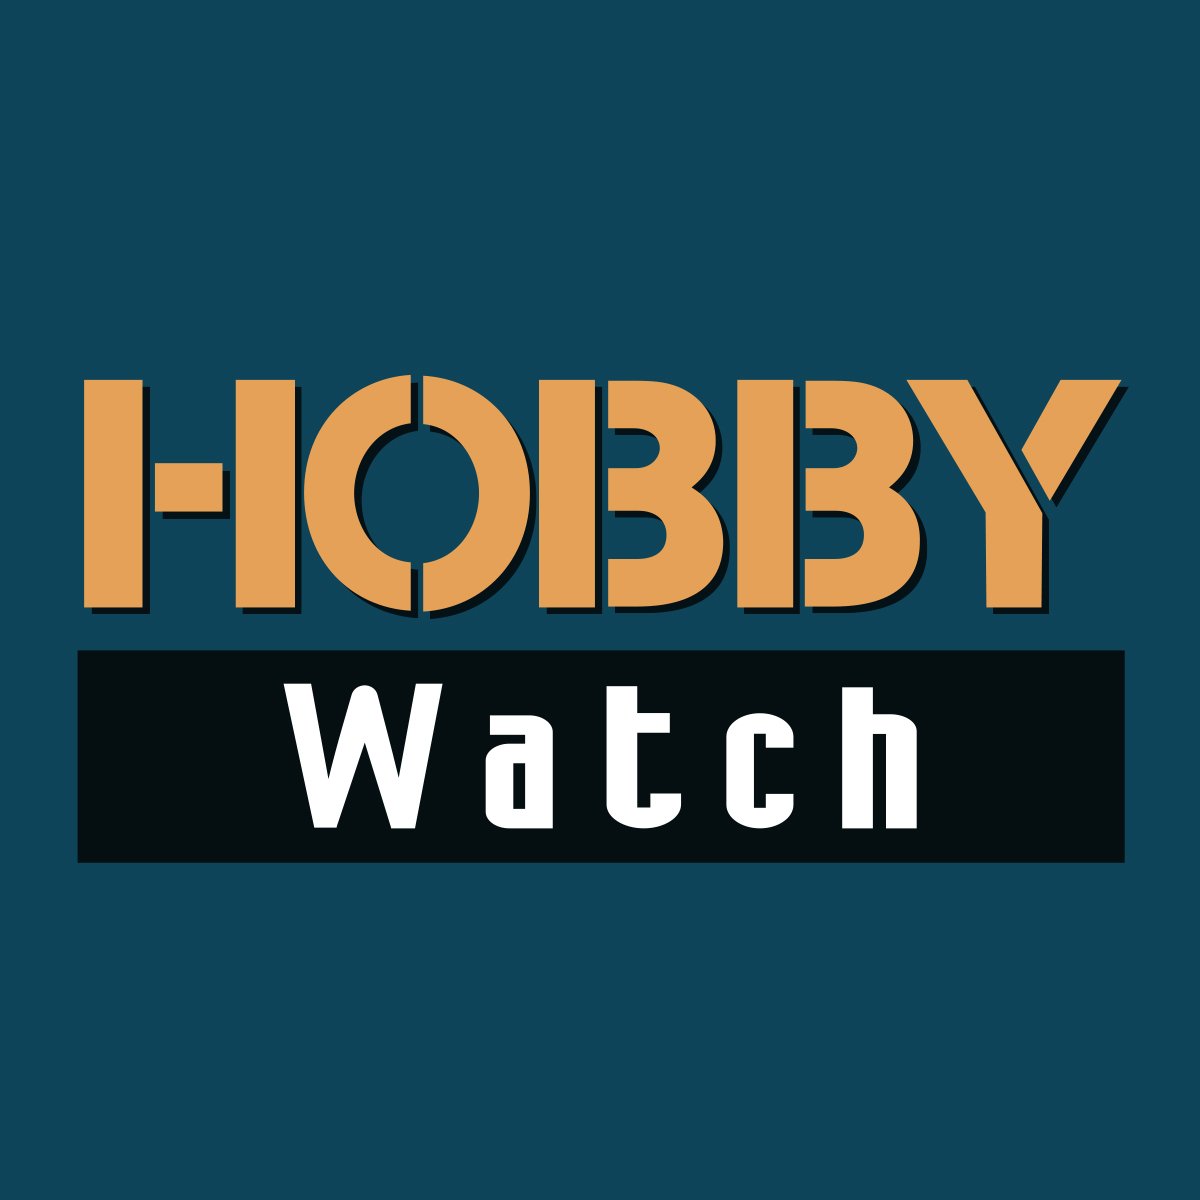 ホビー総合専門誌 Hobby Watch 創刊のお知らせ Game Watch